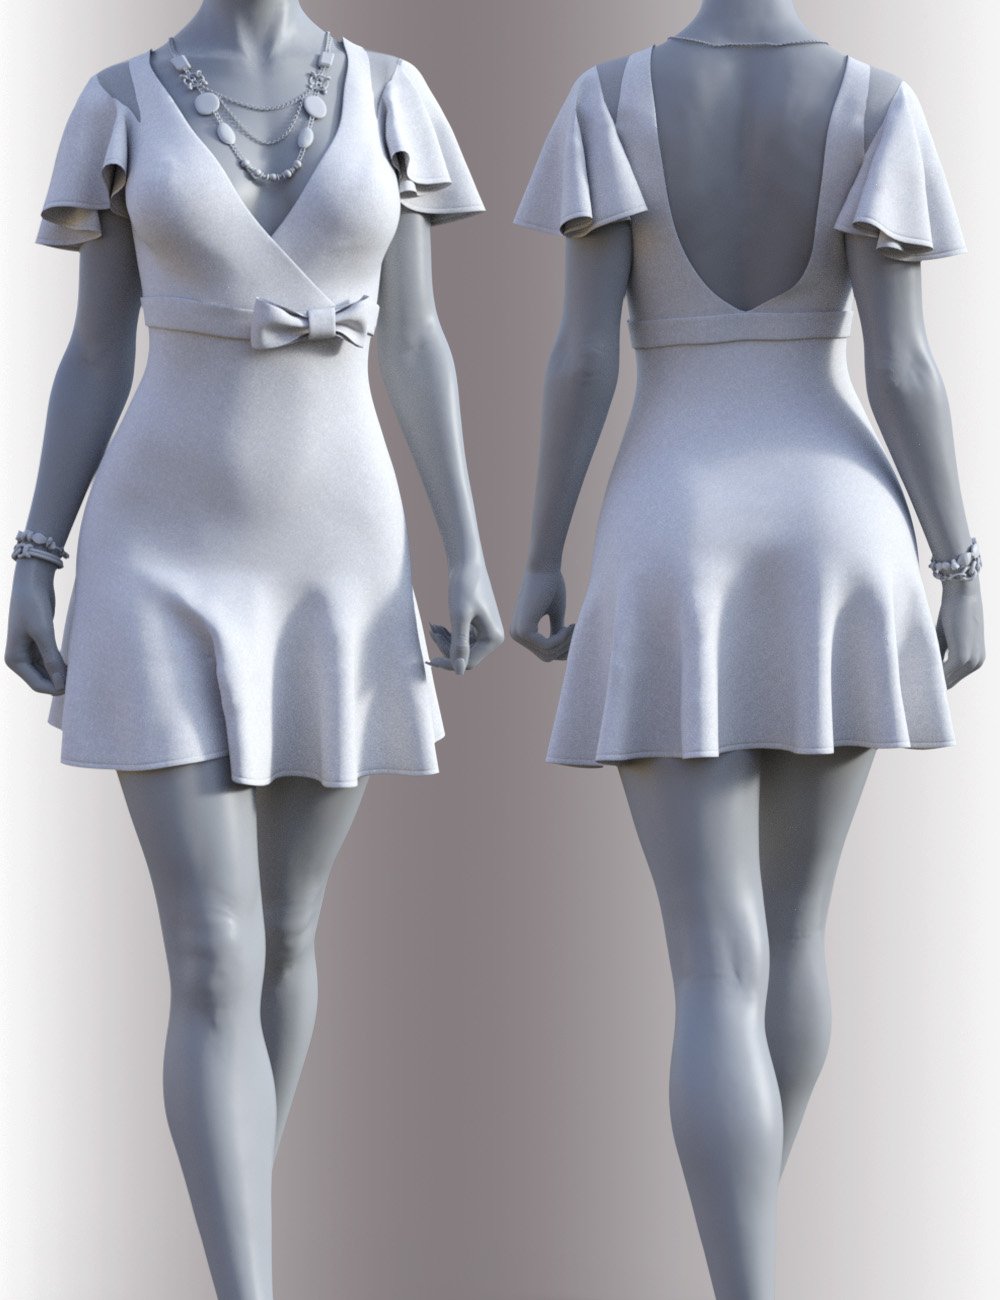 dForce Miranda Dress Outfit for Genesis 8.1 Females by: OnnelArryn, 3D Models by Daz 3D